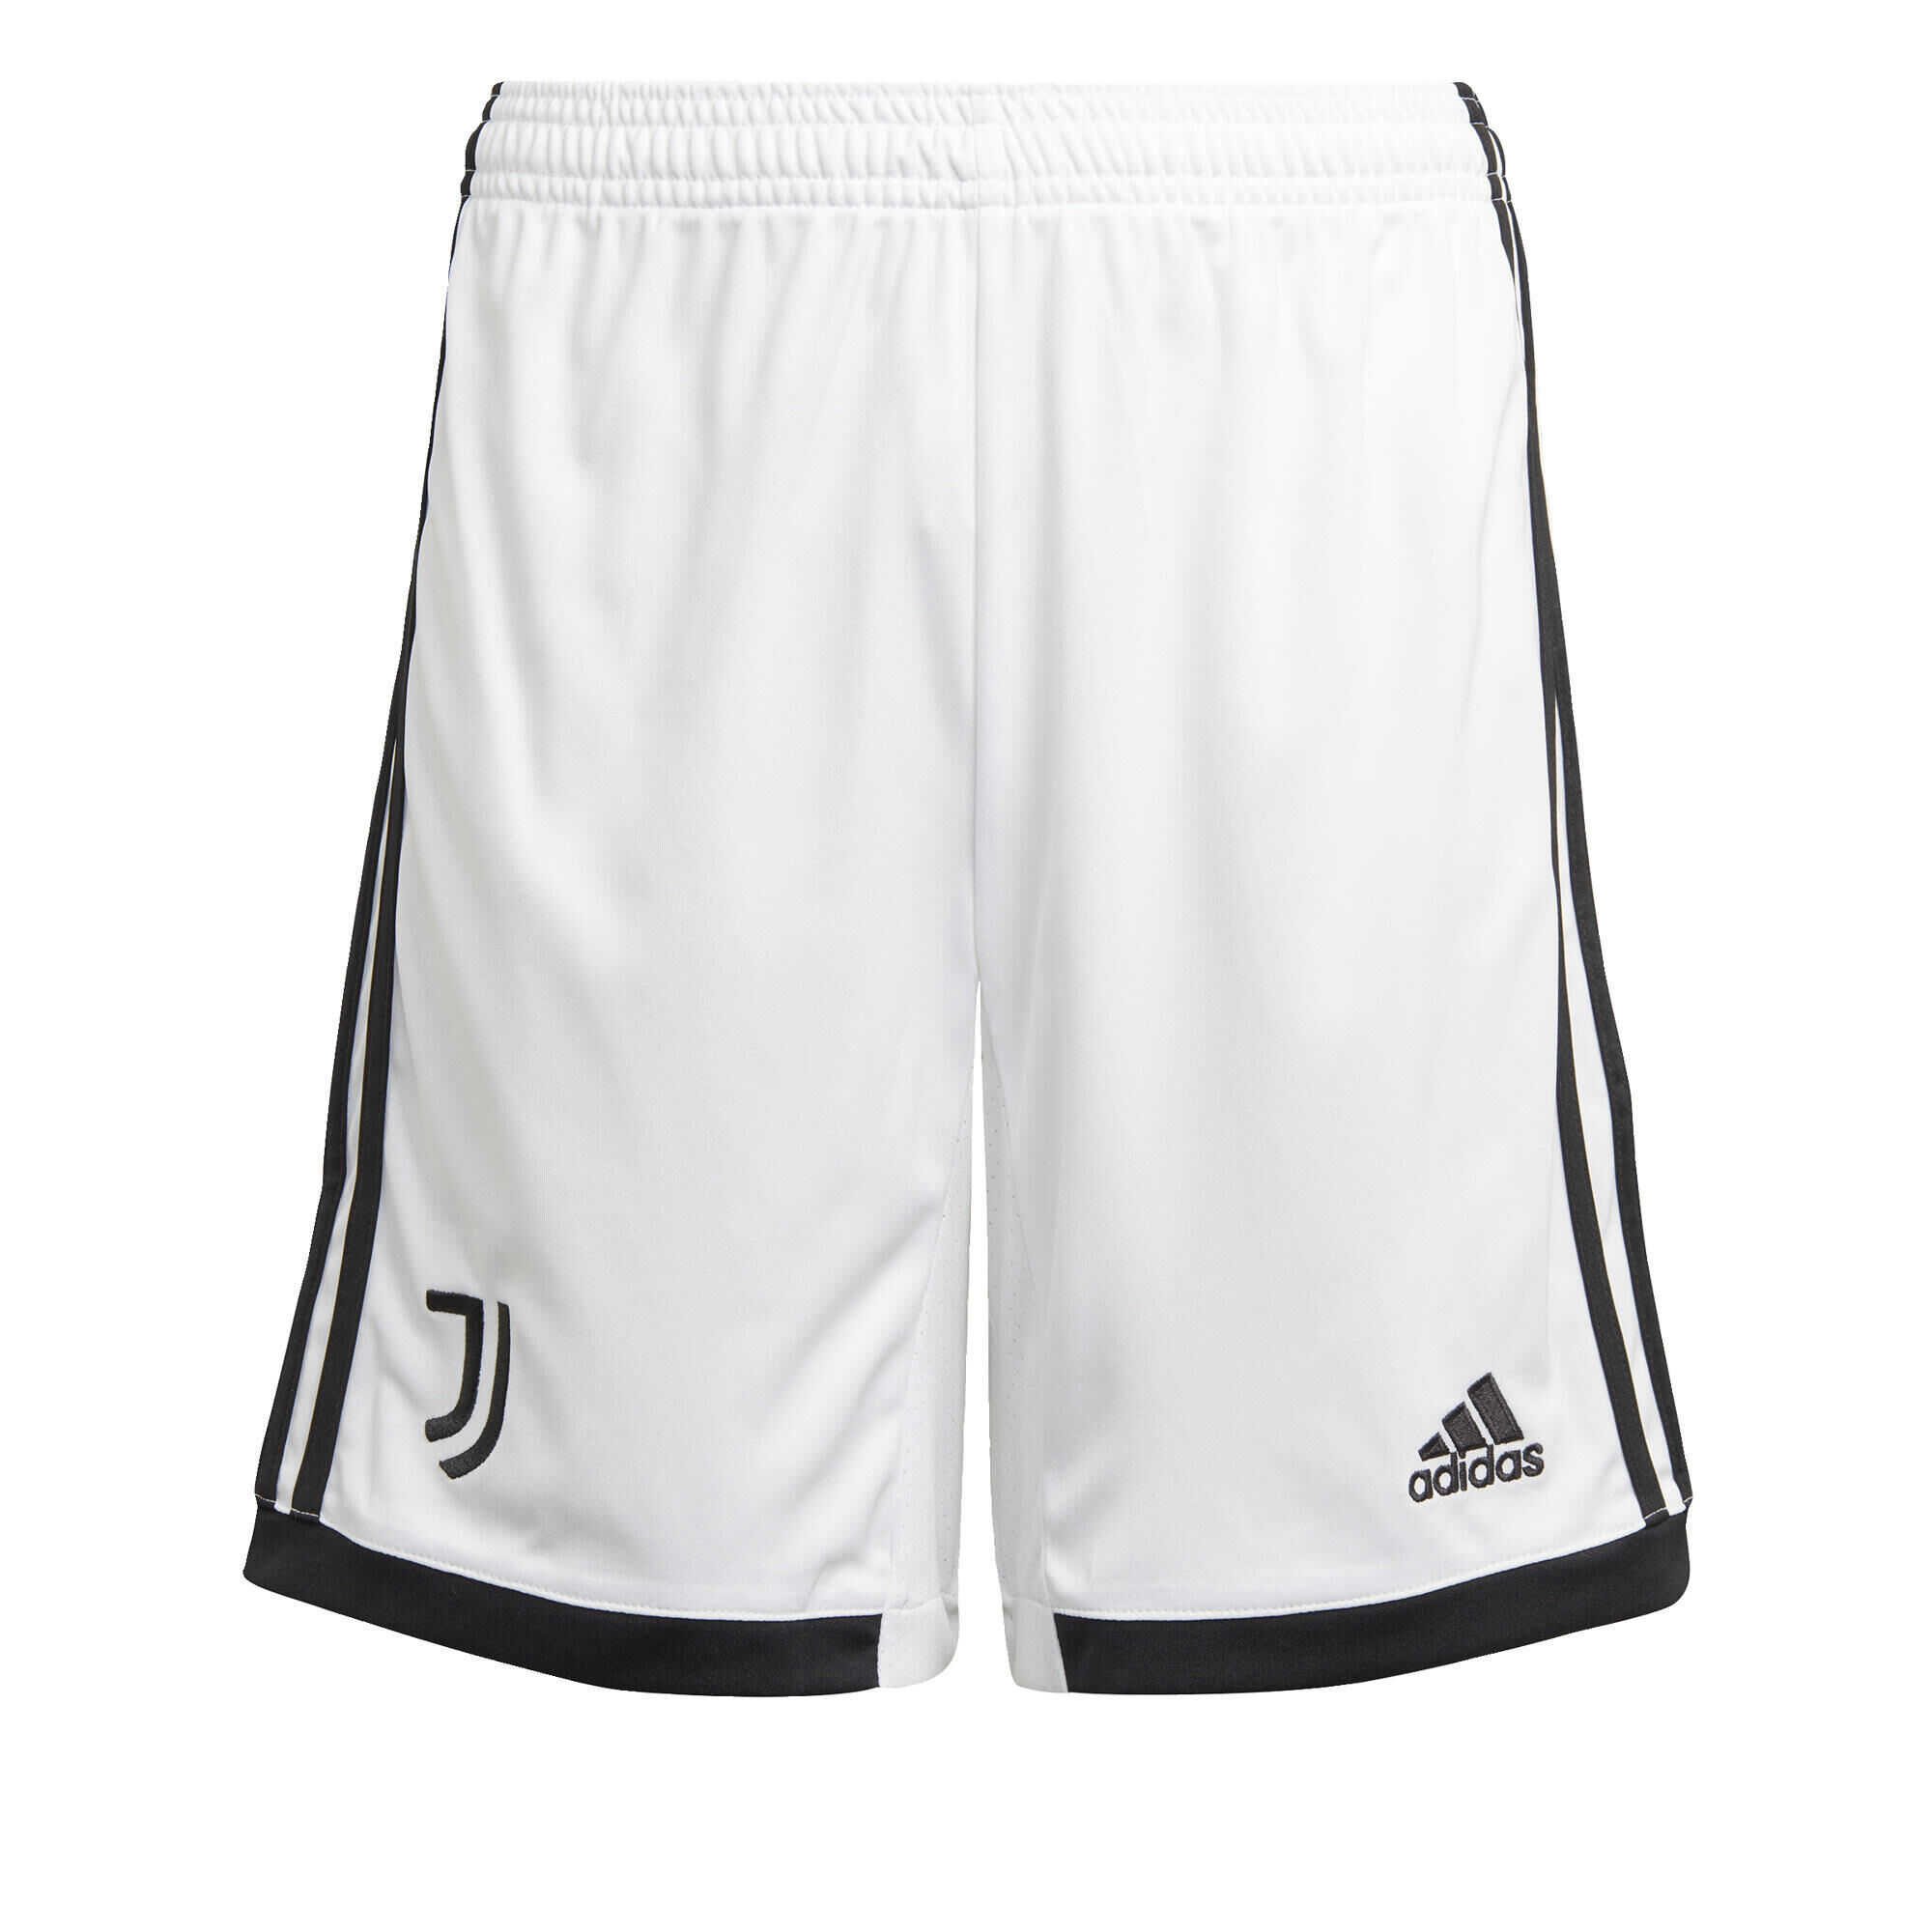 ADIDAS Juventus 22/23 Home Shorts